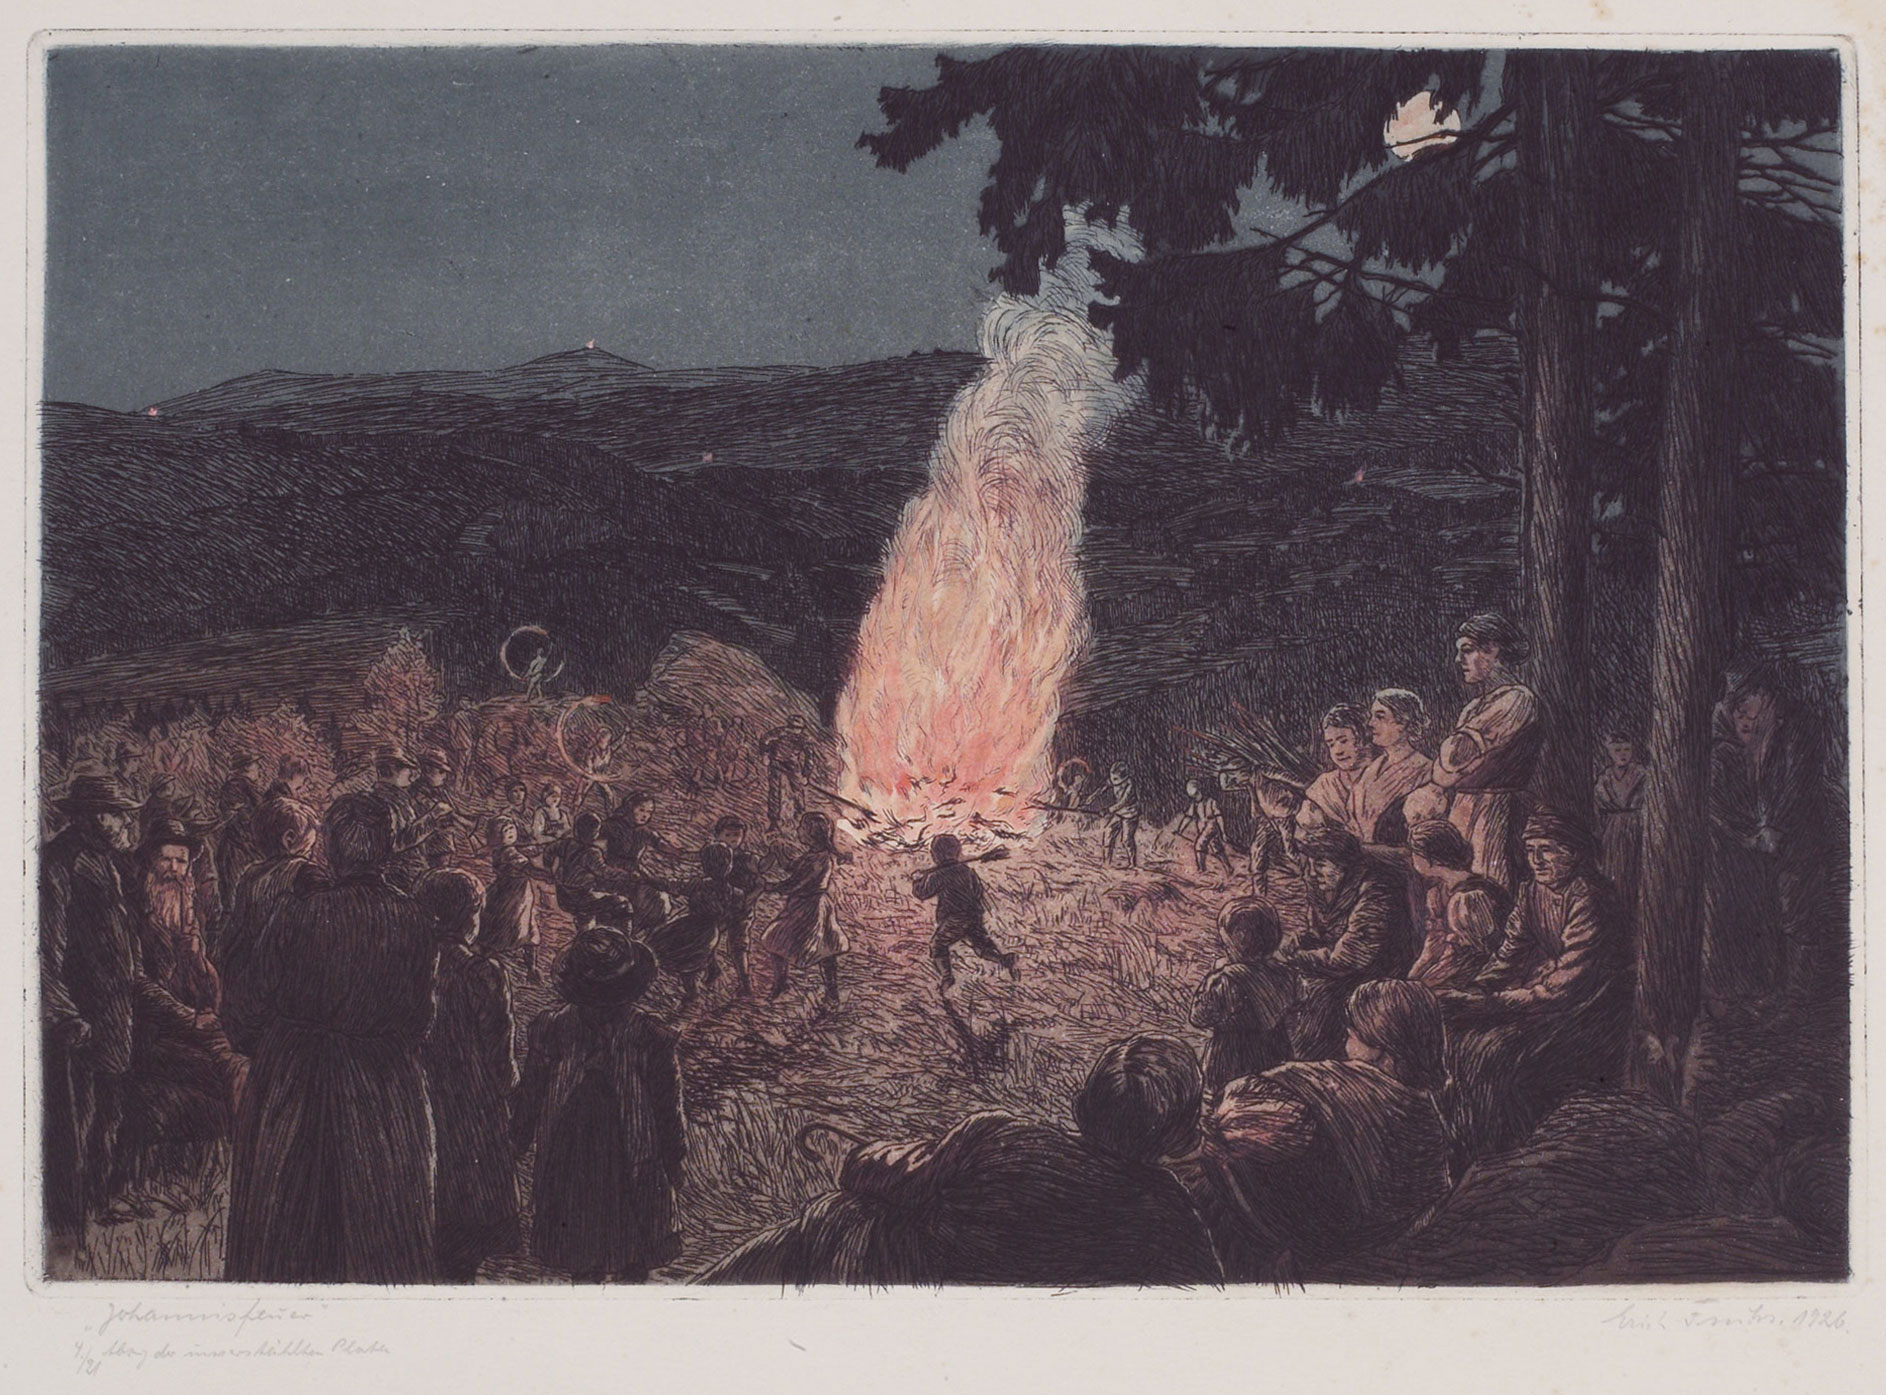 grafika z nocnym ogniskiem i zgromadzonymi wokół niego postaciami